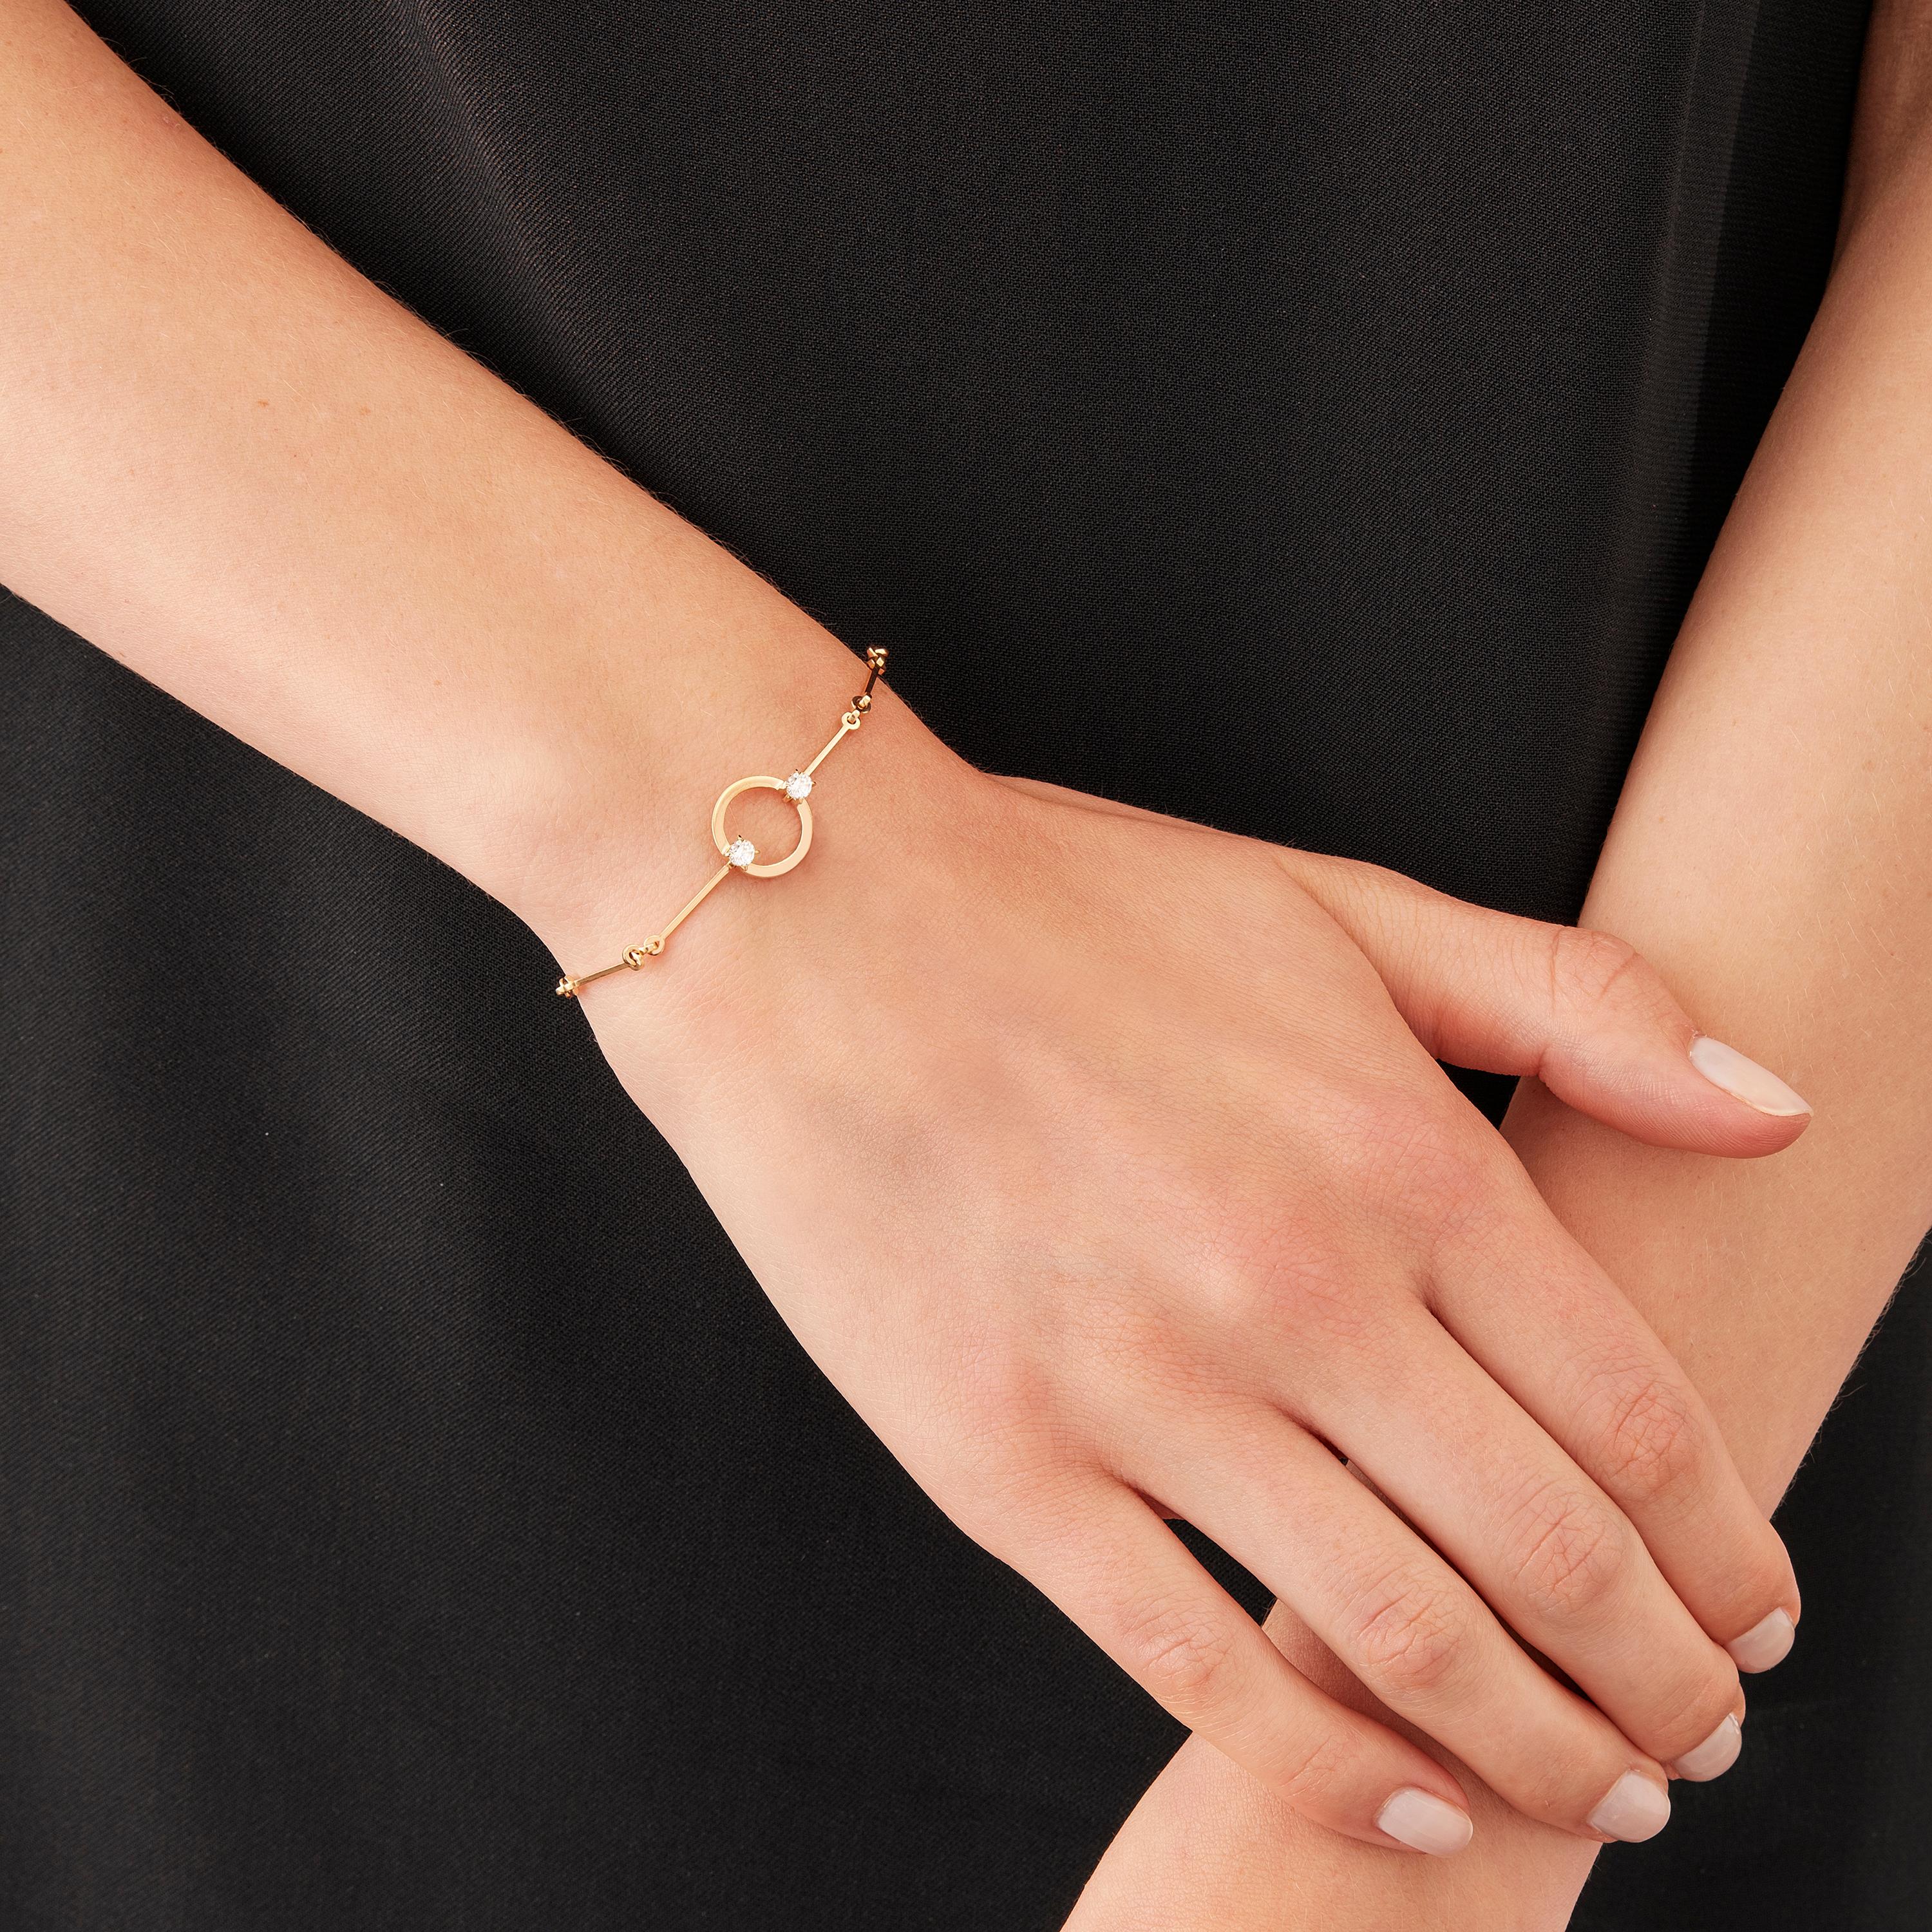 Fabriqué à la main dans l'atelier milanais de Nathalie Jean, le bracelet goutte d'eau Hoi An en édition limitée est une gracieuse composition d'anneaux articulés et de maillons à barres en or rosé, une couleur chaude et sophistiquée proche de l'or